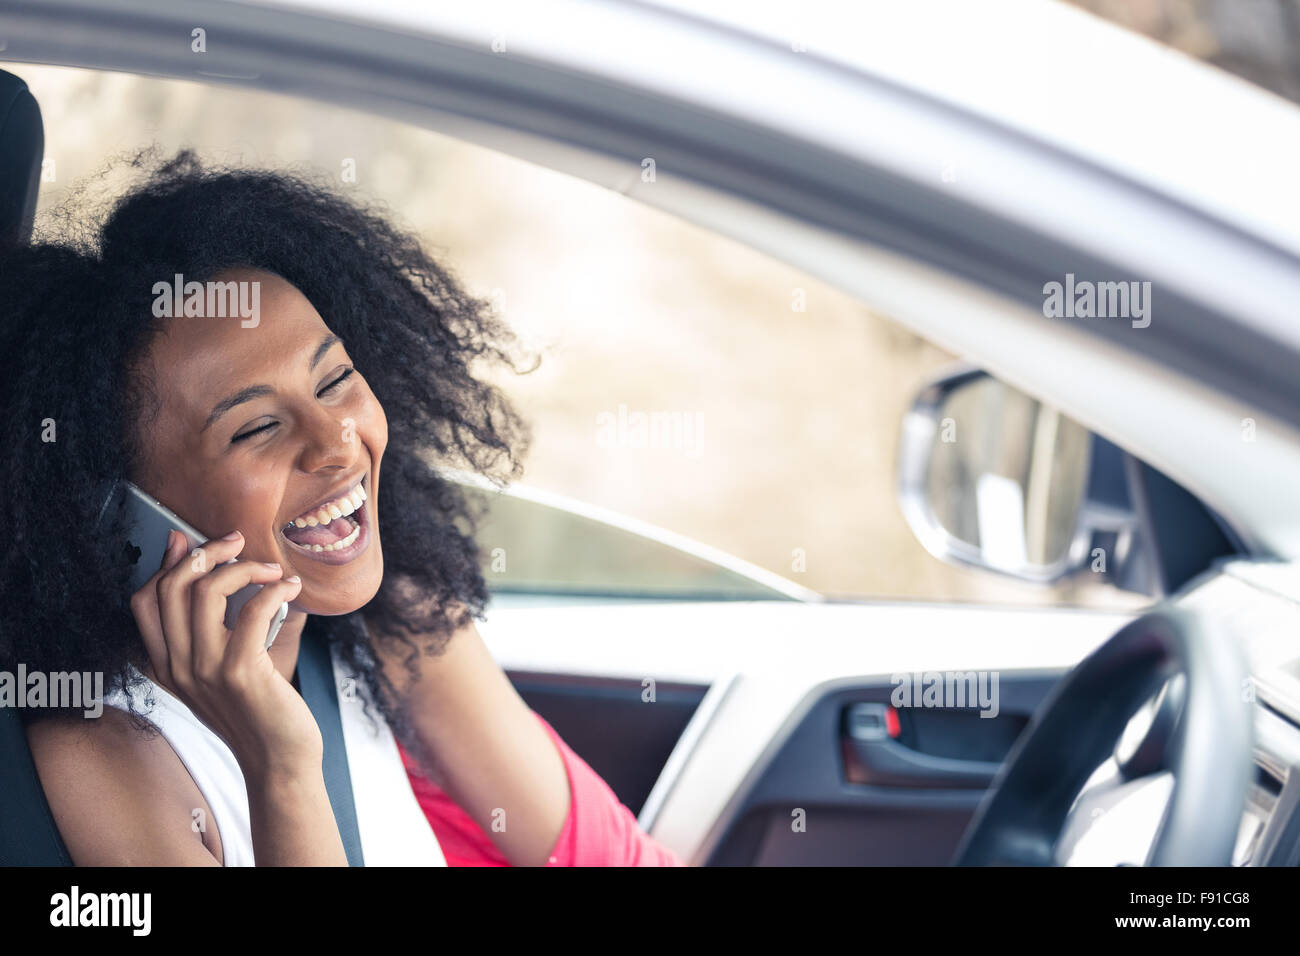 Une jolie jeune femme métisse dans une voiture sur son téléphone mobile comme un passager Banque D'Images